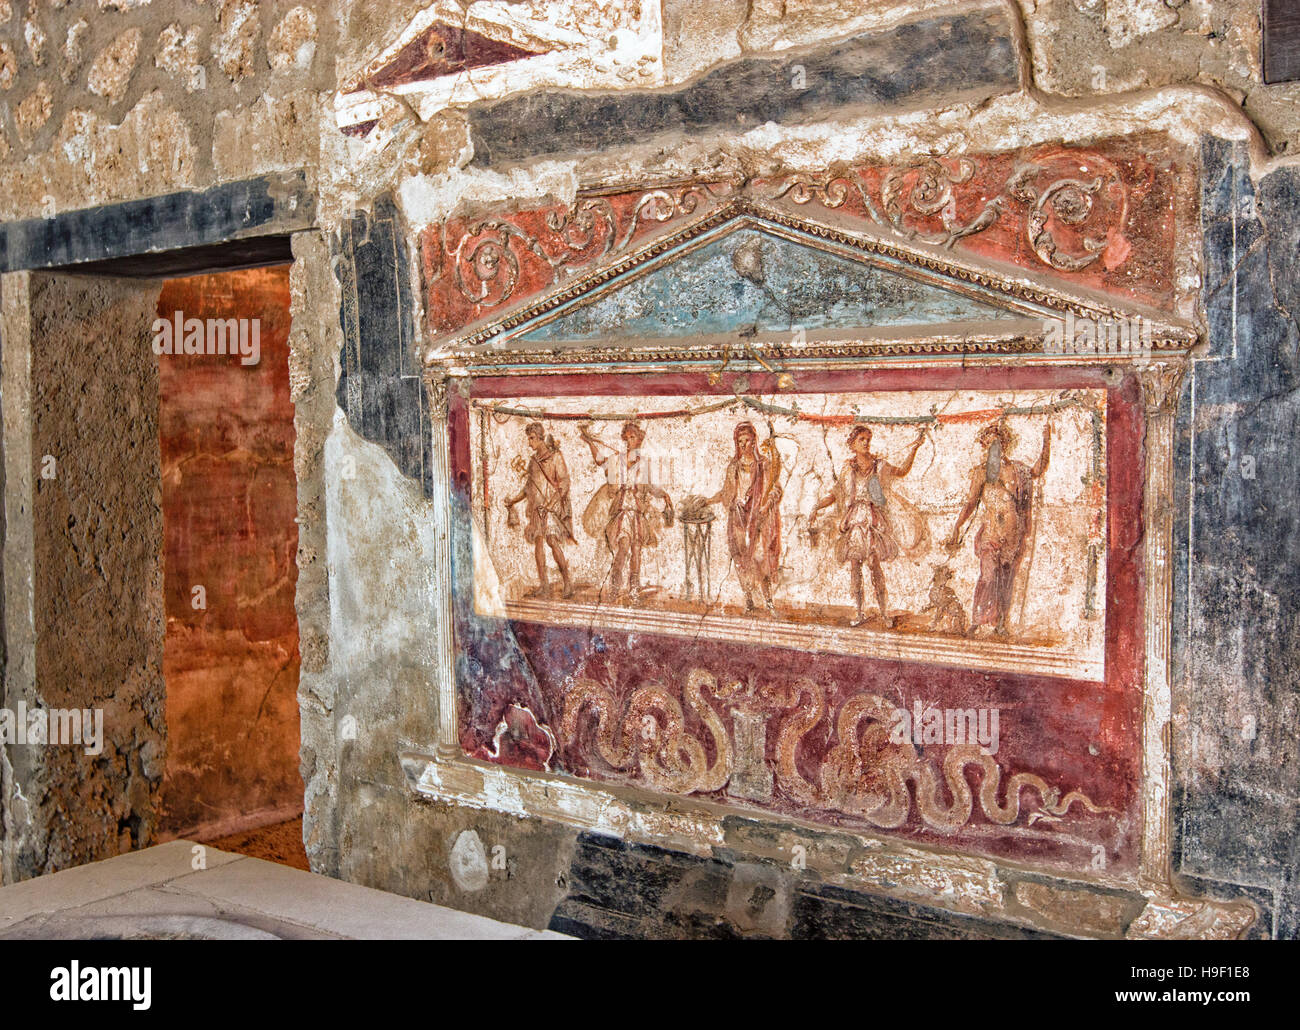 Ancien mur peint fresques de l'ancienne ville romaine de Pompéi. Campania, Italie Banque D'Images